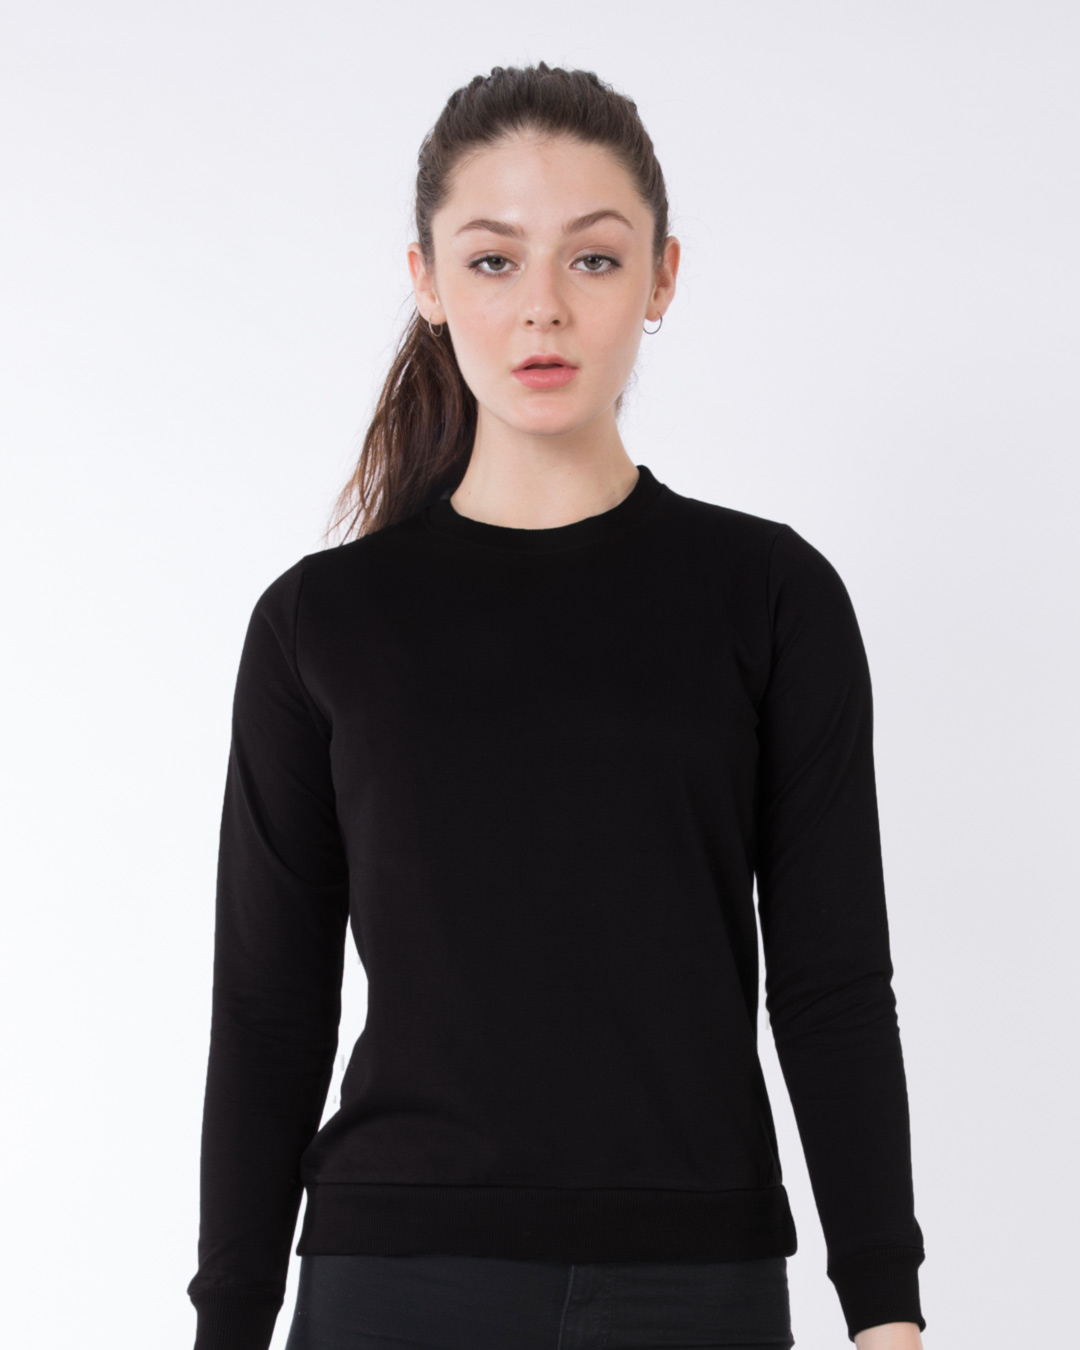 Buy Jet Black Crew Neck Sweatshirt for Women black Online at Bewakoof